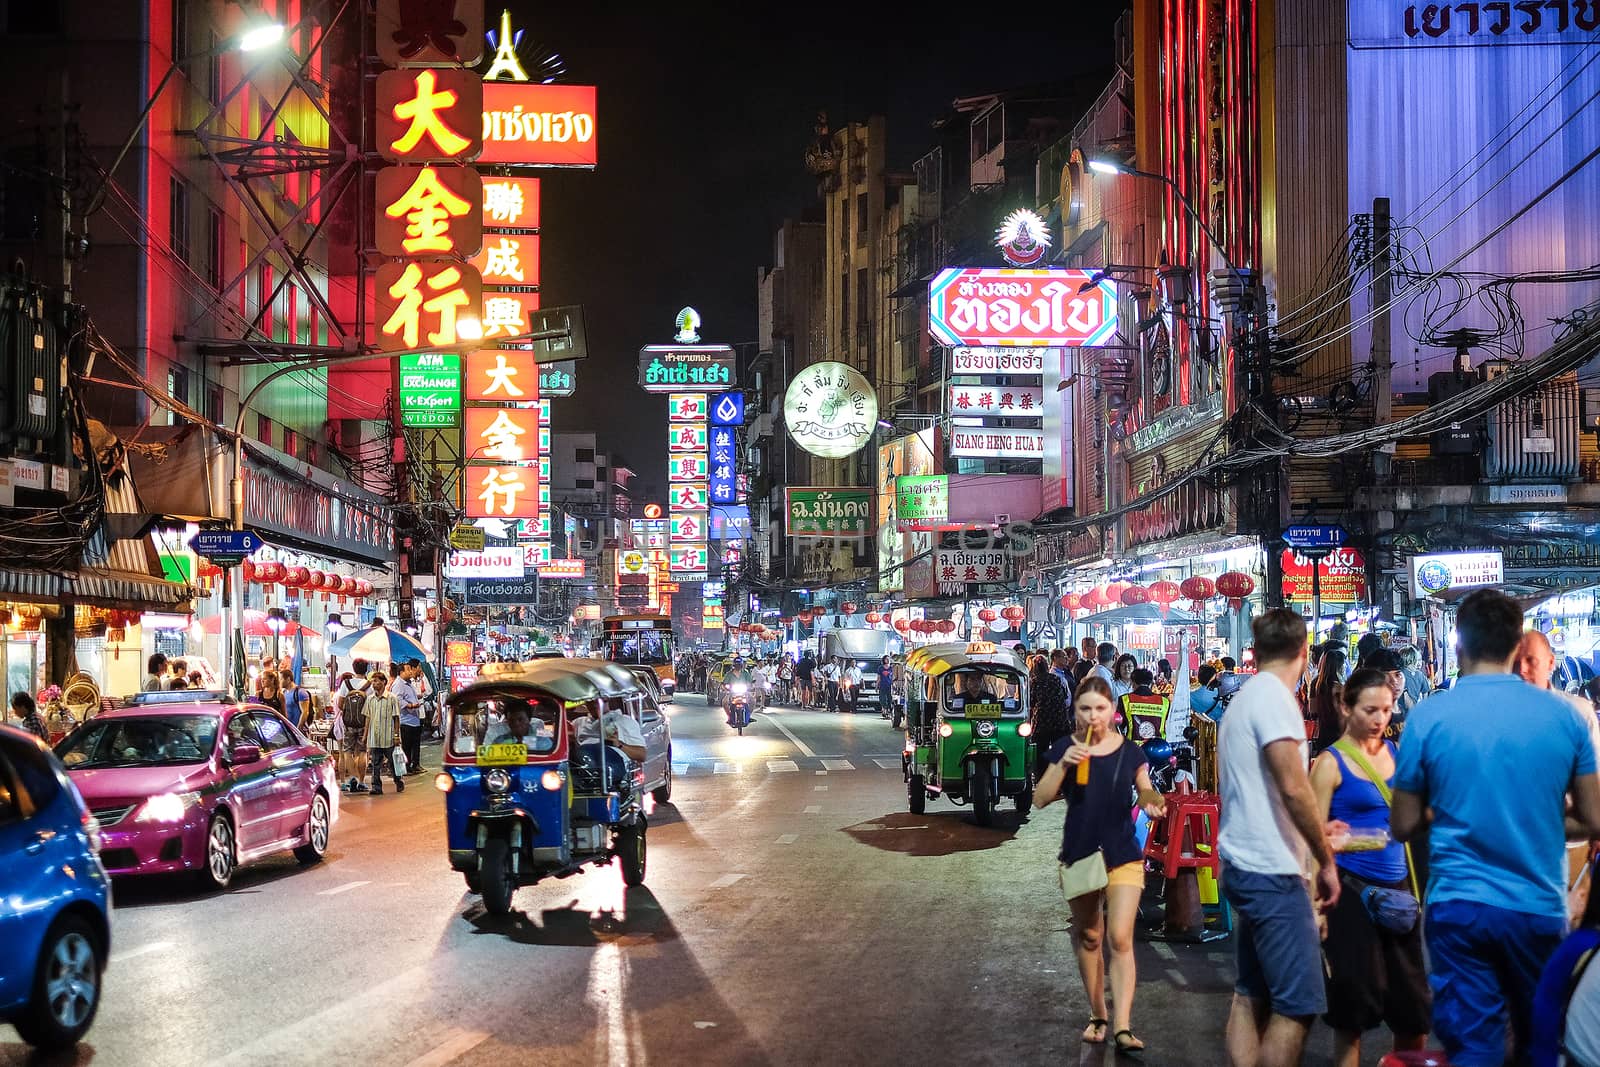 CHINATOWN, BANGKOK, THAILAND - 9 JANUARY, 2016: Cars and shops o by Surasak